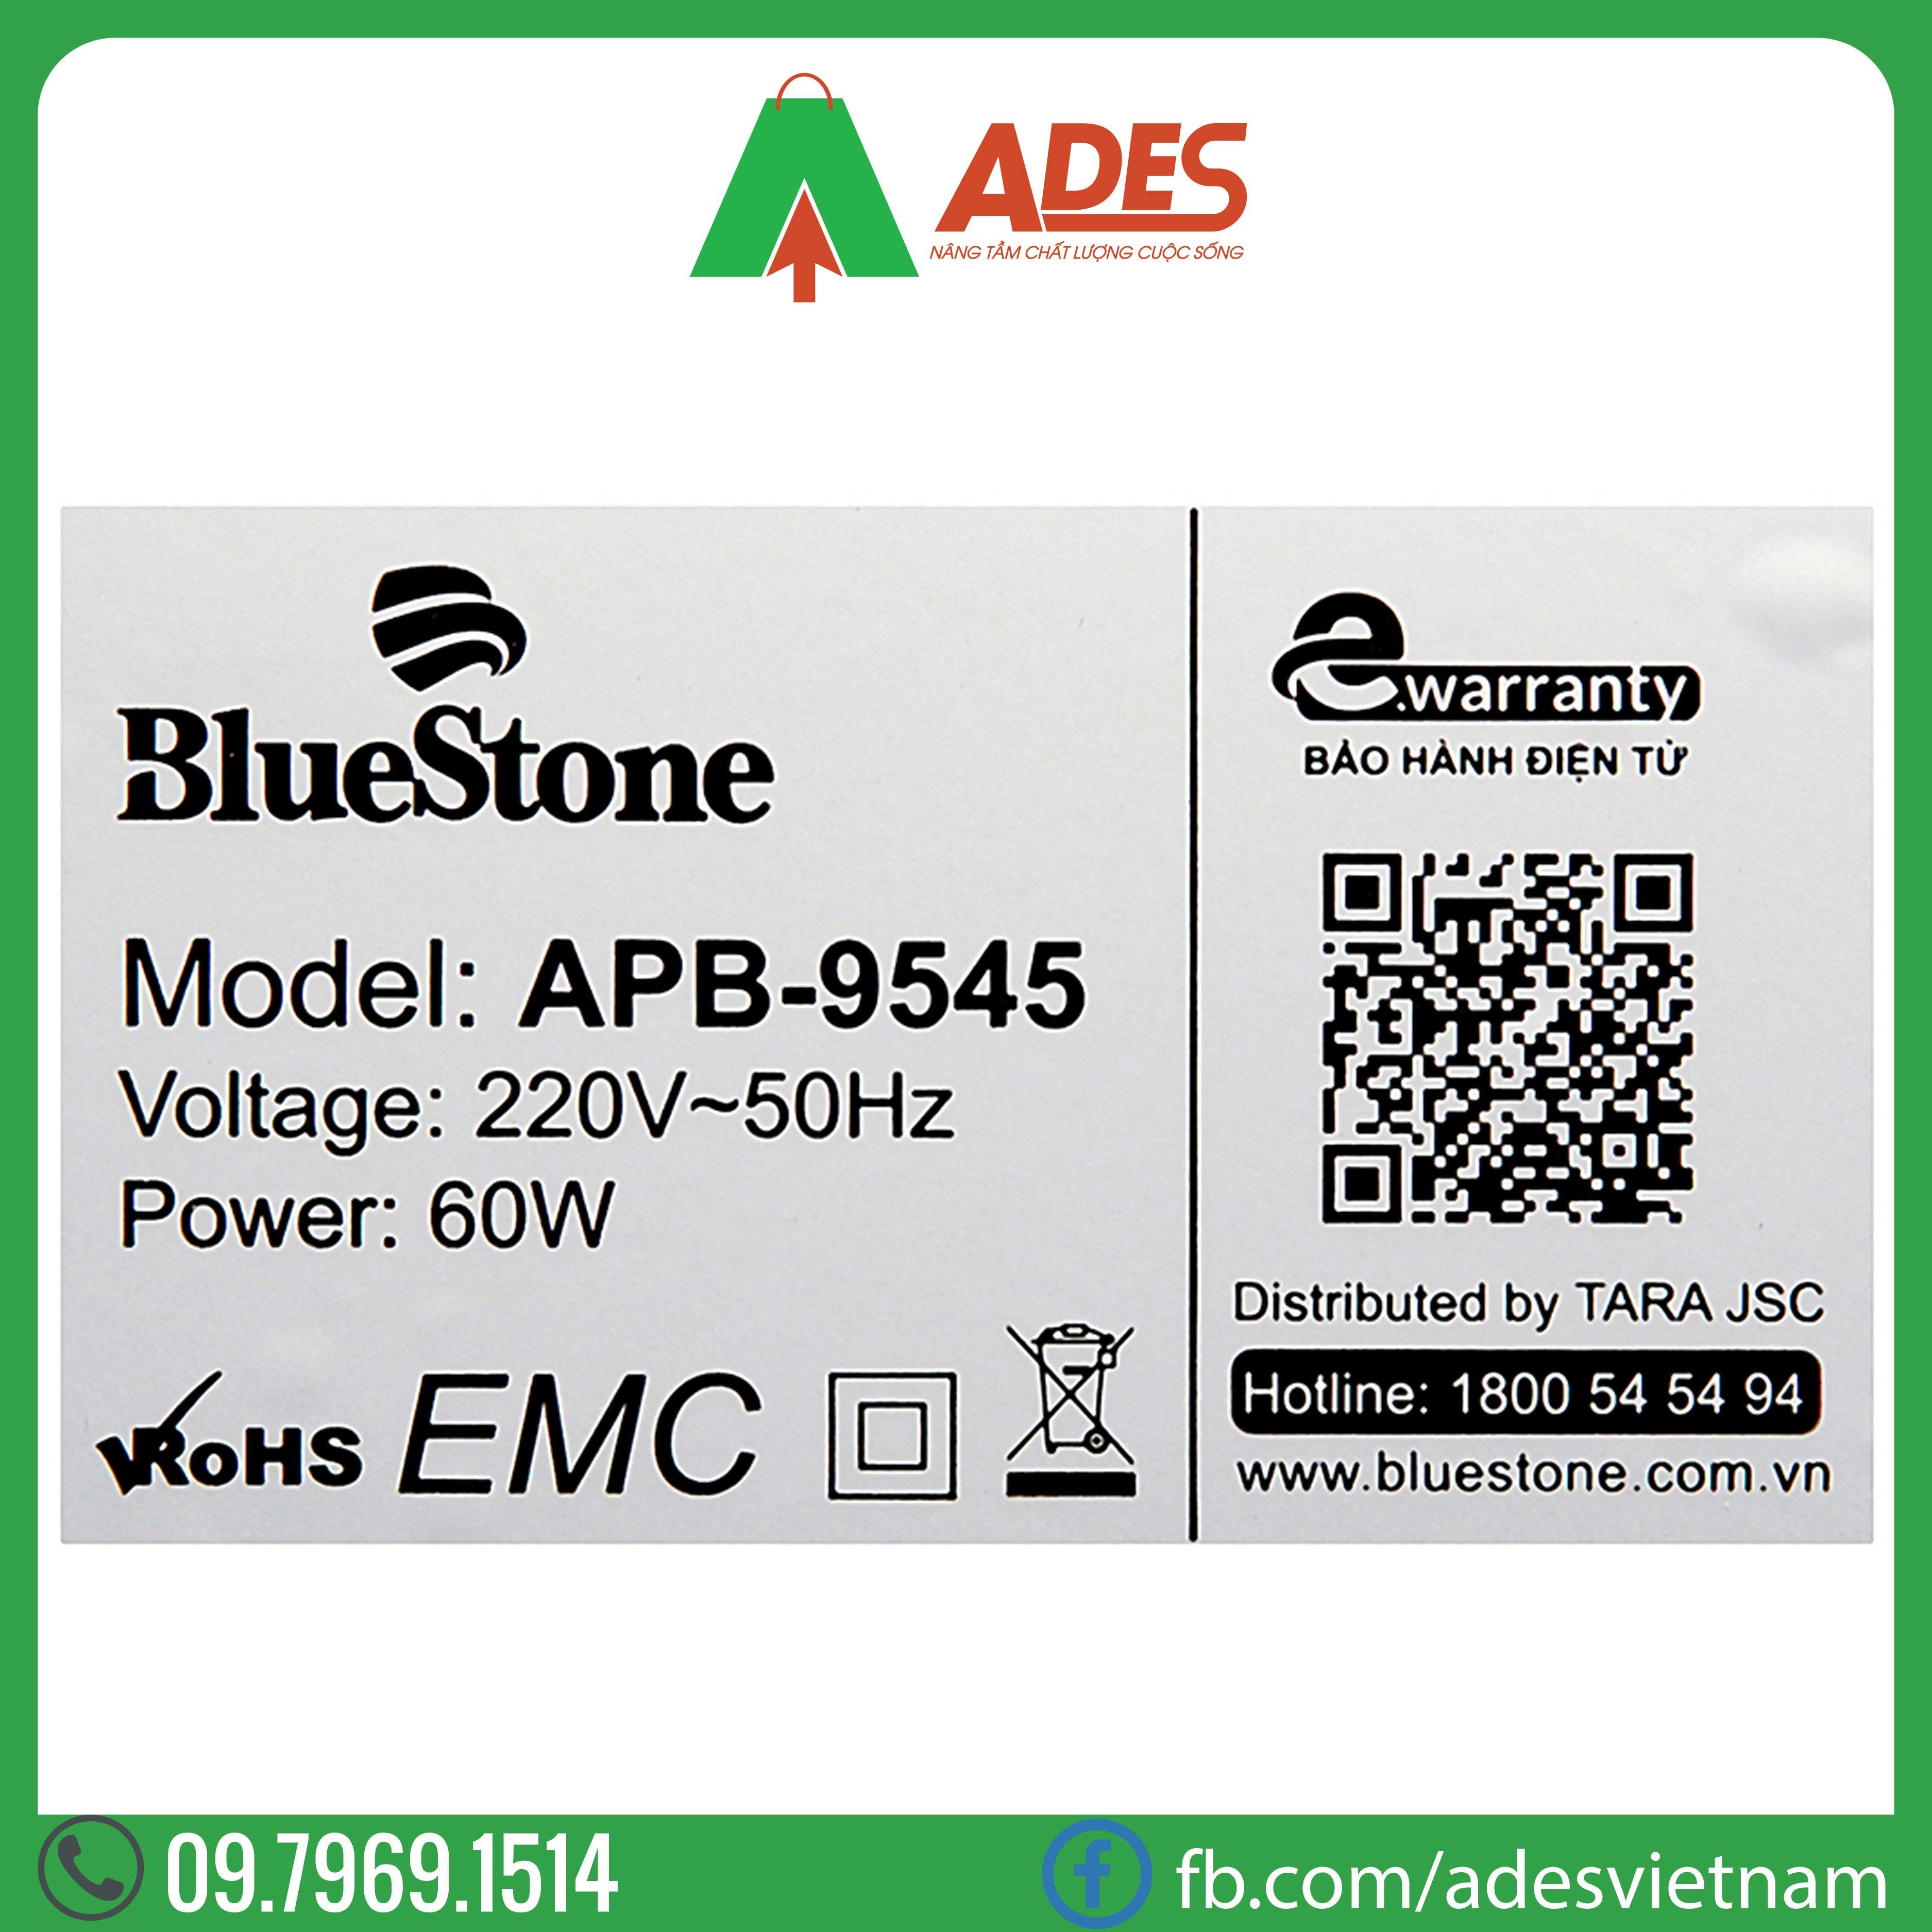 may loc khong khi Bluestone APB-9545